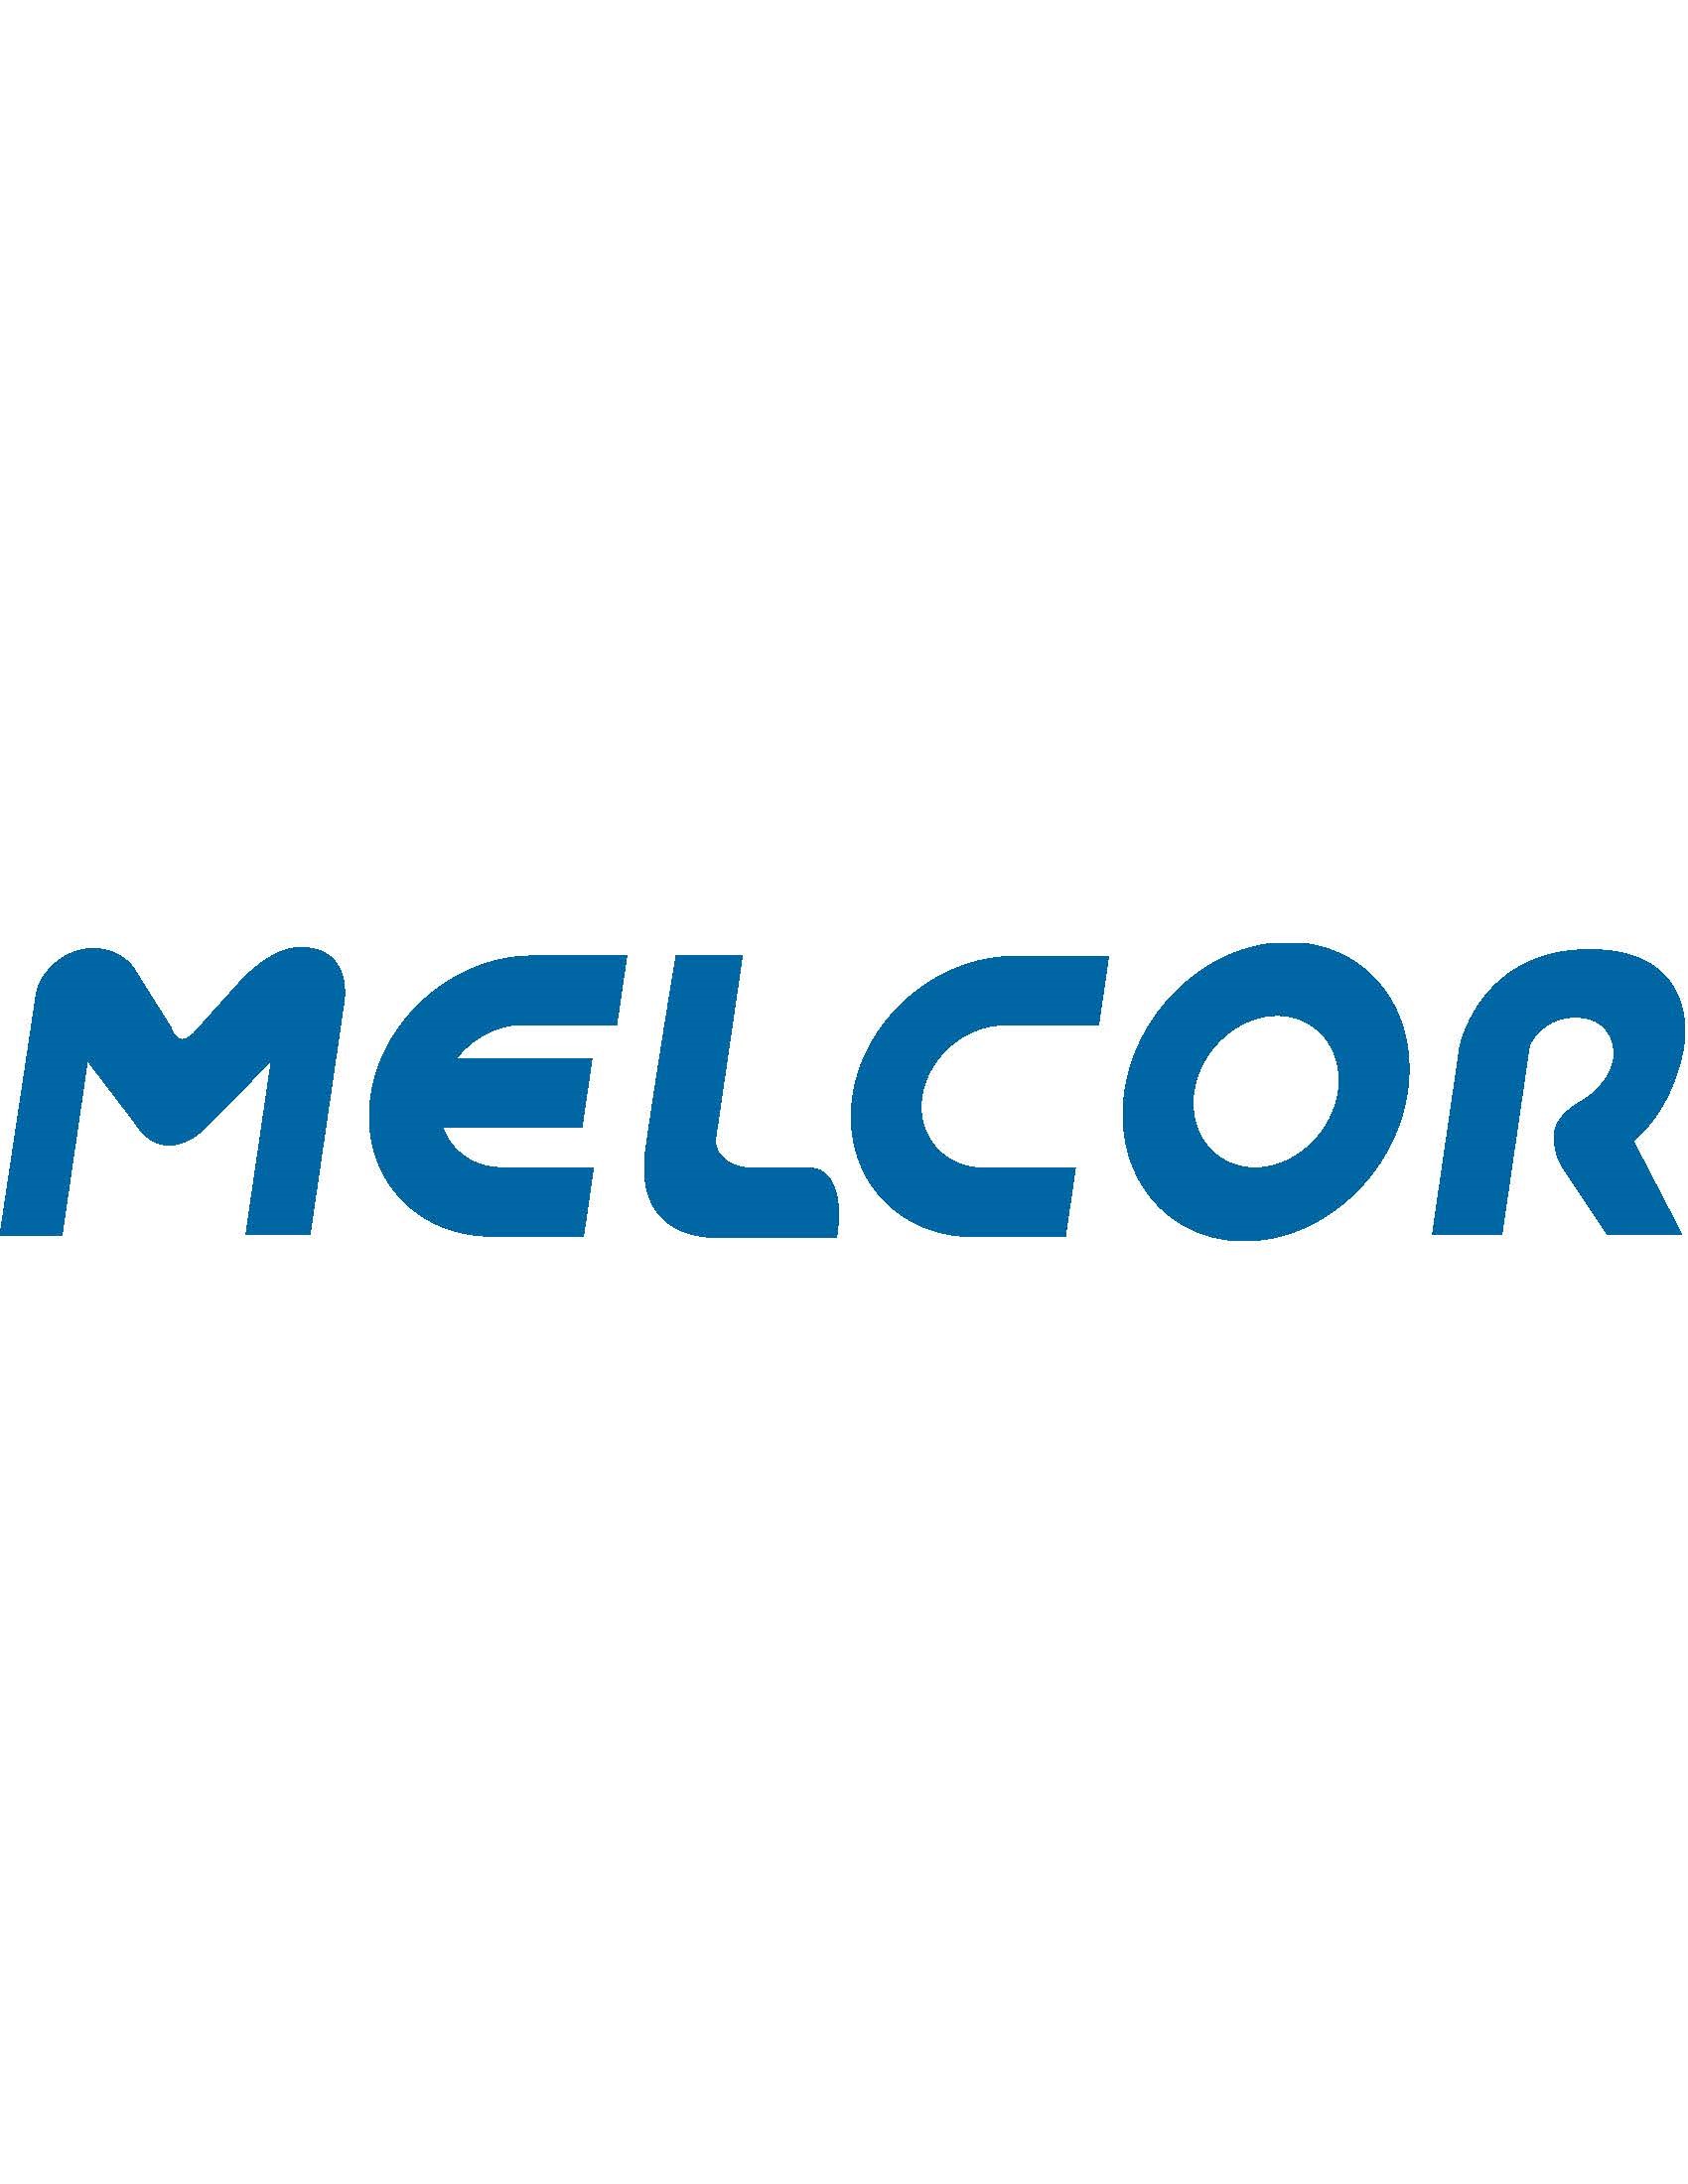 Melcor Logo